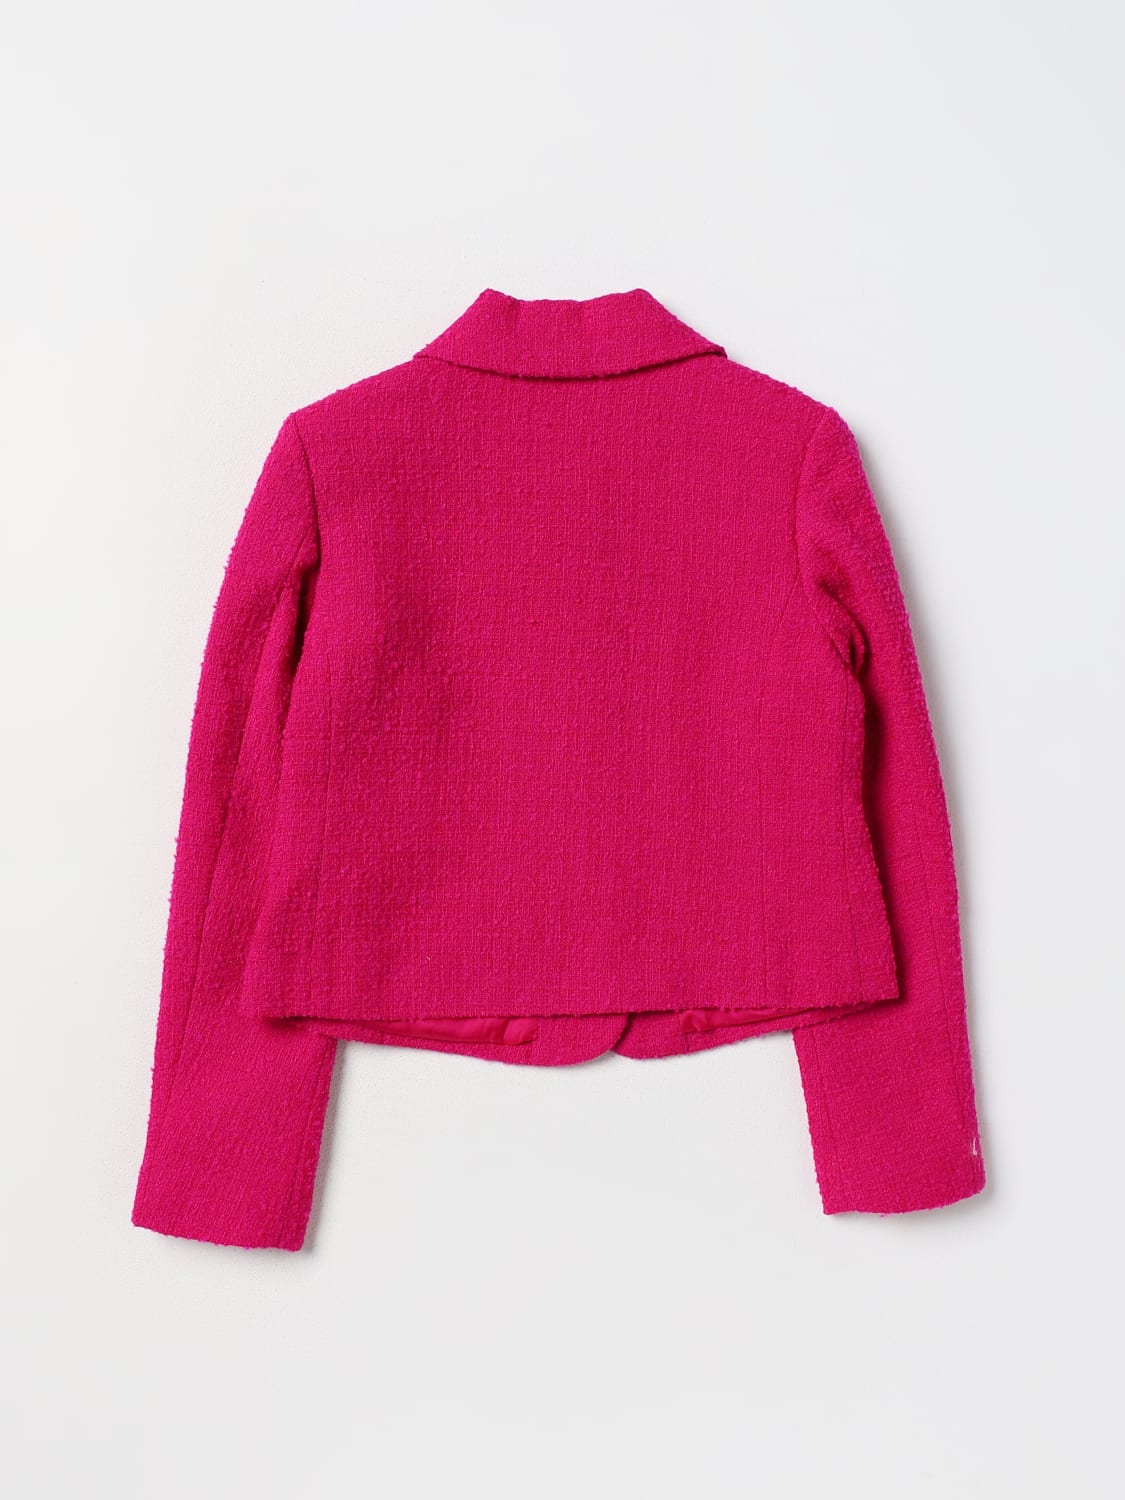 MOSCHINO KID：西服外套儿童- 紫红色| MOSCHINO KID 西服外套 